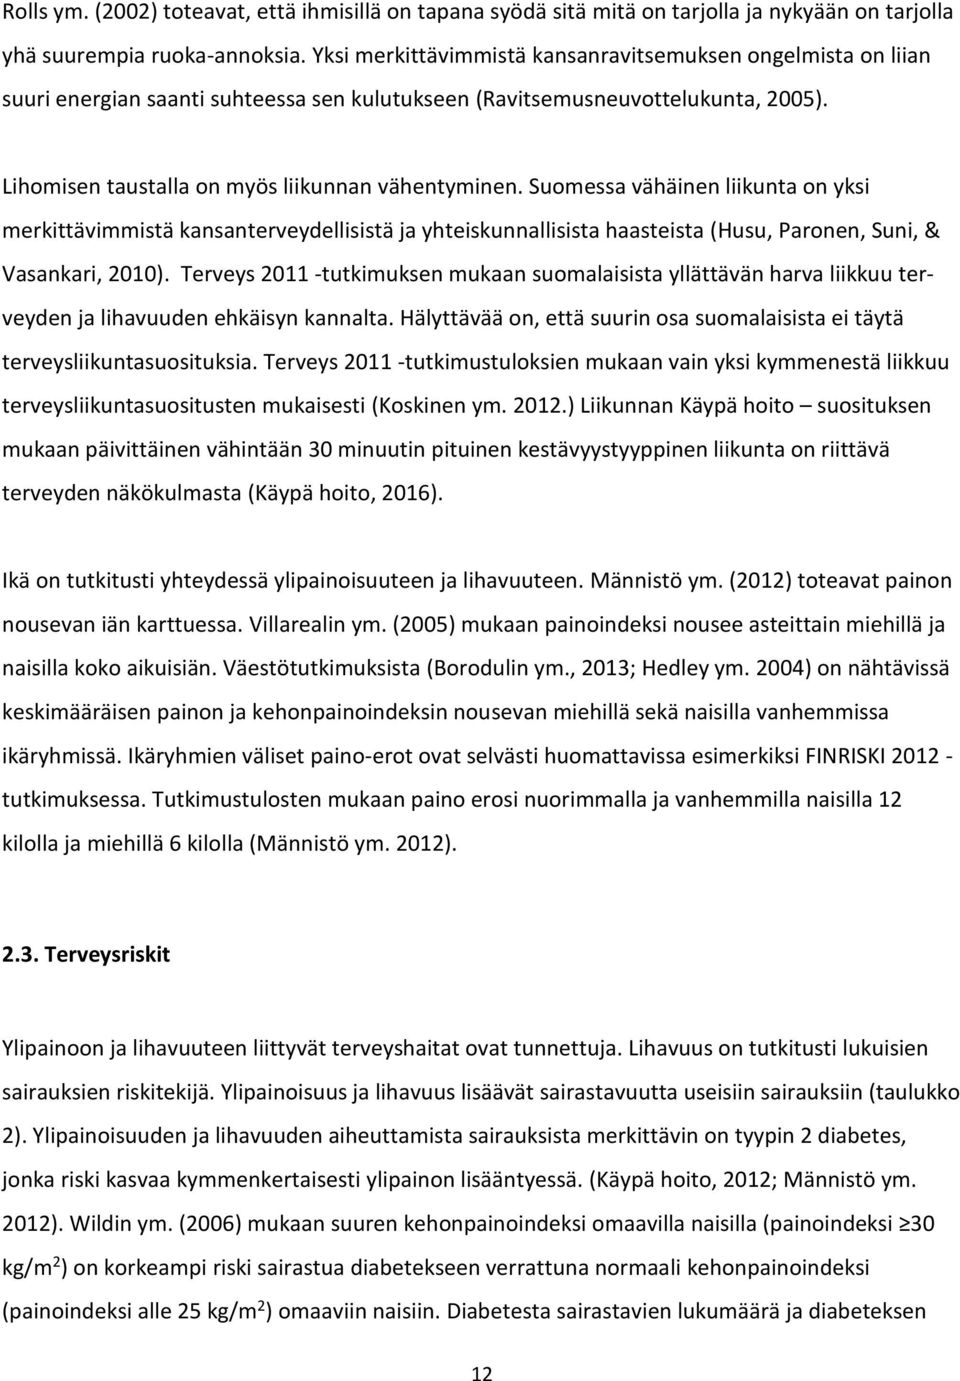 Suomessa vähäinen liikunta on yksi merkittävimmistä kansanterveydellisistä ja yhteiskunnallisista haasteista (Husu, Paronen, Suni, & Vasankari, 2010).